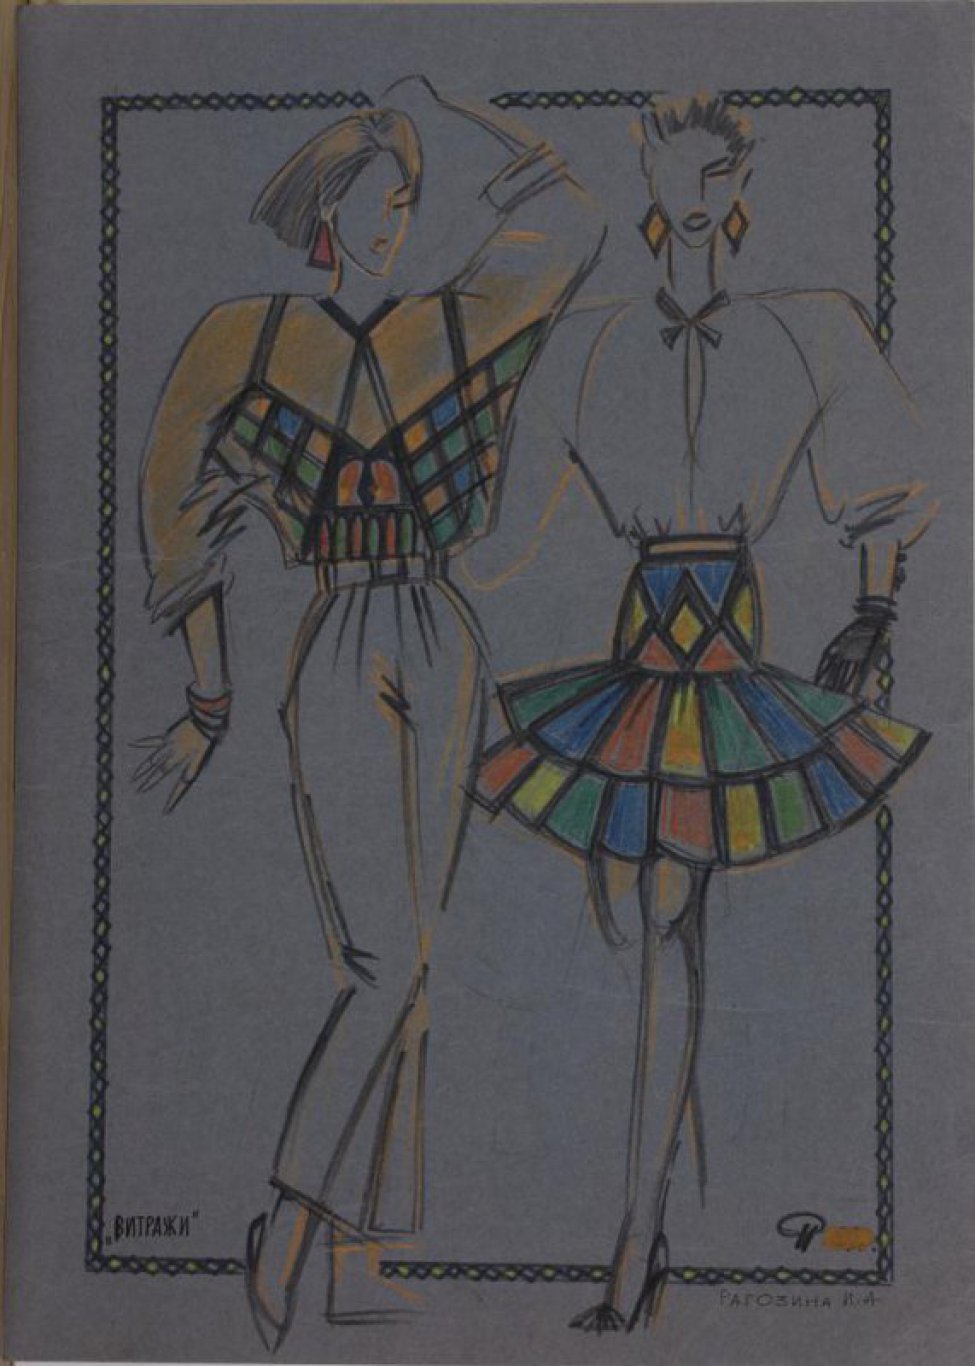 На серой бумаге, в ромбической рамке изображены два эскиза женских костюмов. Слева - комплект из золотистой блузки, низ которой состоит из цветных (синих, зеленых, красных) фигур и брюк. Обувь без каблуков. Справа - комплект из блузки с рукавом реглан и  цветной (синие, красные, зеленые, золотистые фигуры) короткой юбки с двумя оборками на кокетке.  Обувь на высоком каблуке.